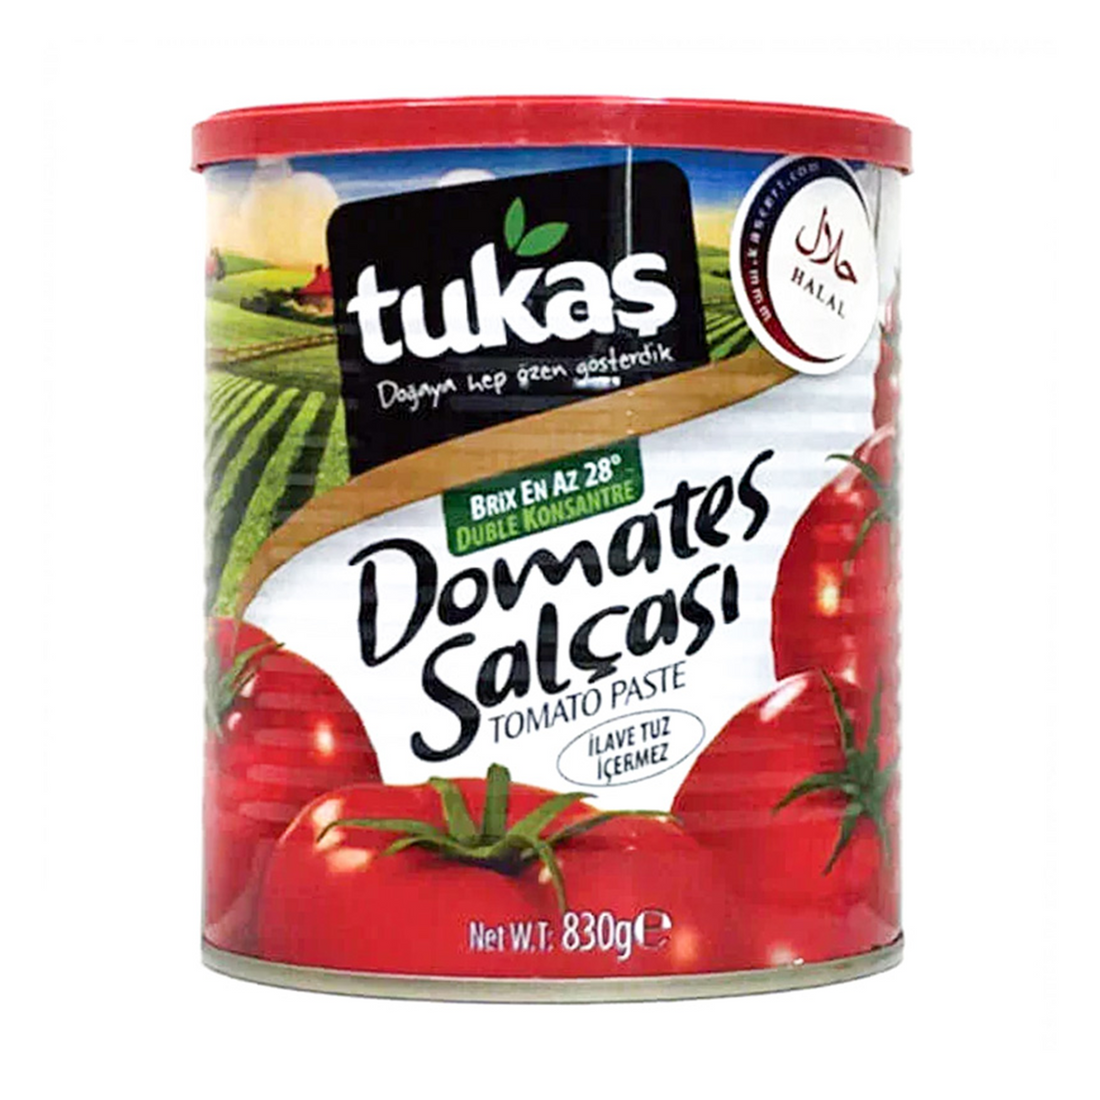 トゥカシュ トマトペースト缶 トマトサルチャ 830g トルコ産 | Tukas Domates Salcasi | Tomato Paste